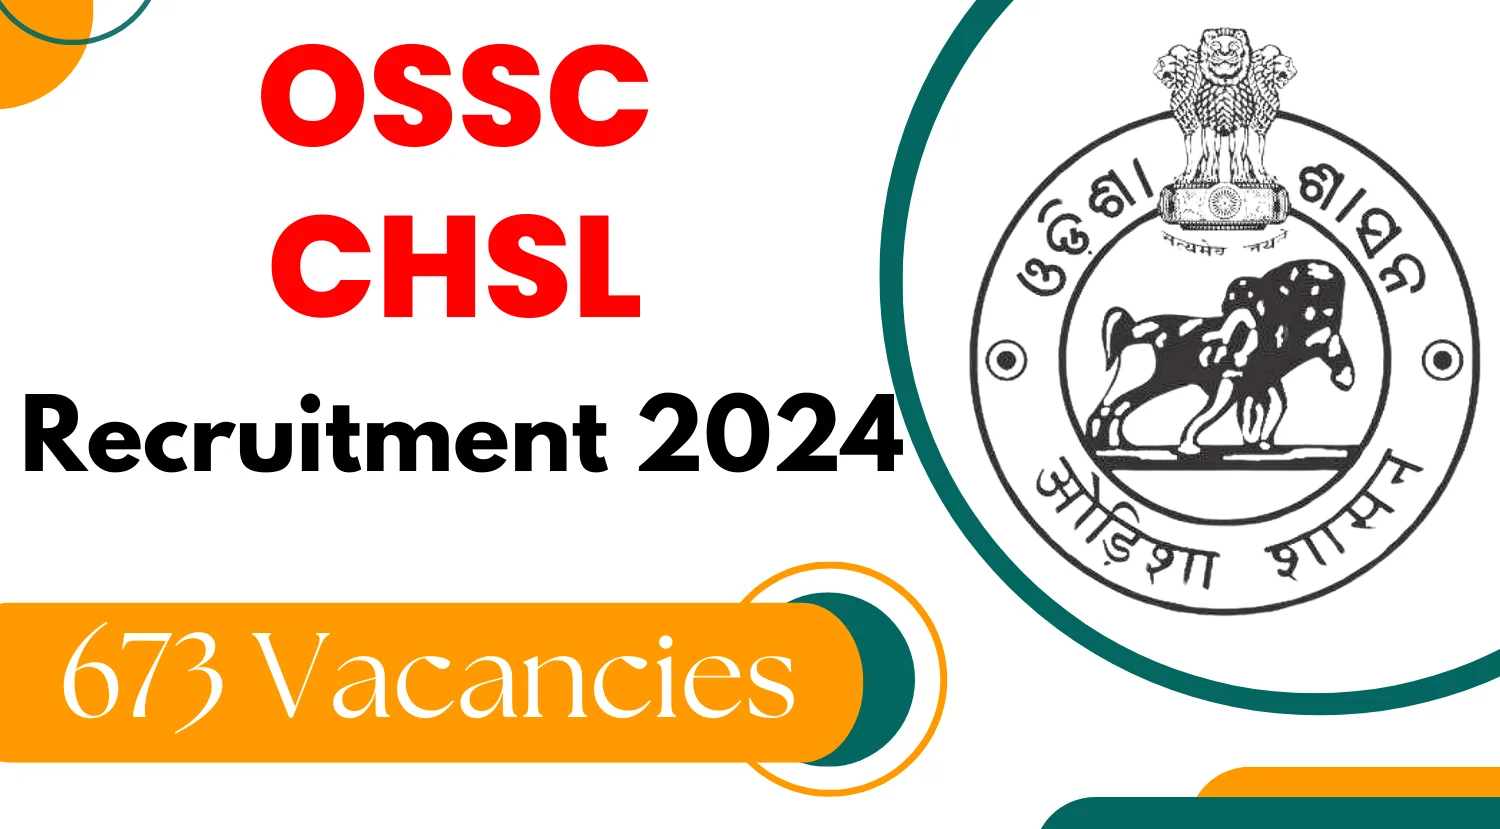 OSSC CHSL Recruitment 2024 for 673 Vacancies